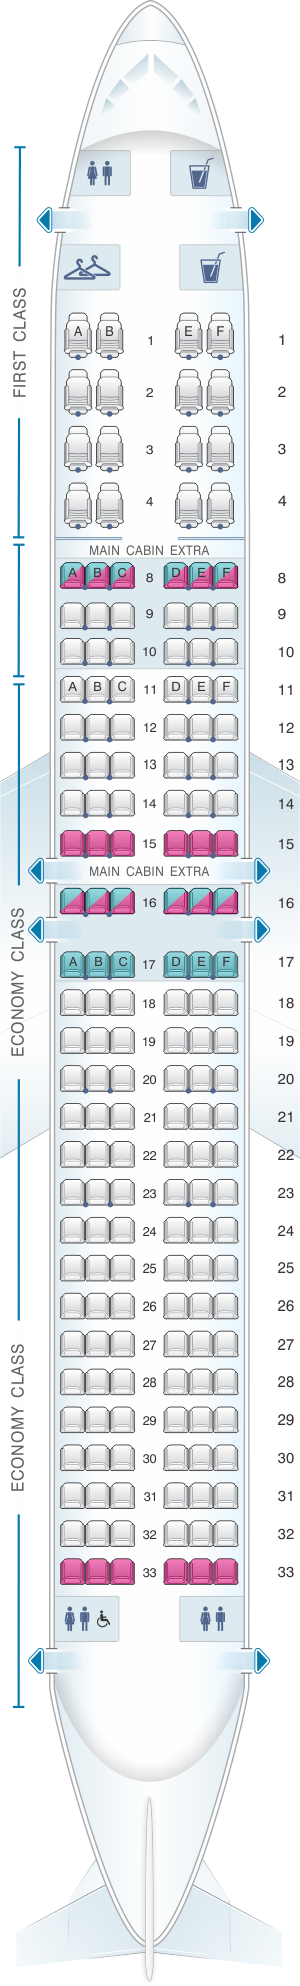 seating plan 737 max 8